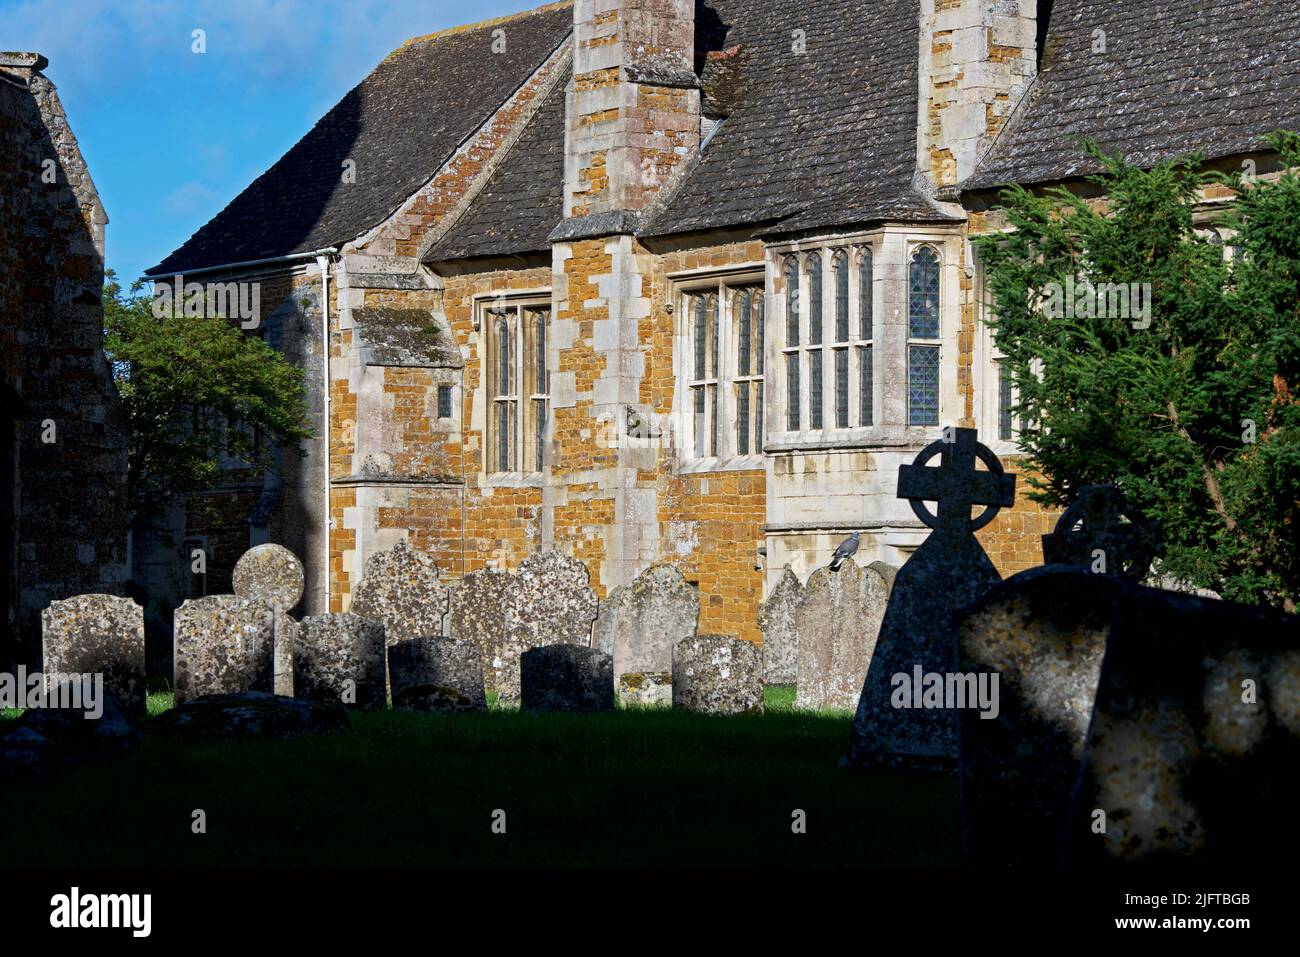 La Maison Bede dans le village de Lyddington, Rutland, Angleterre Royaume-Uni Banque D'Images